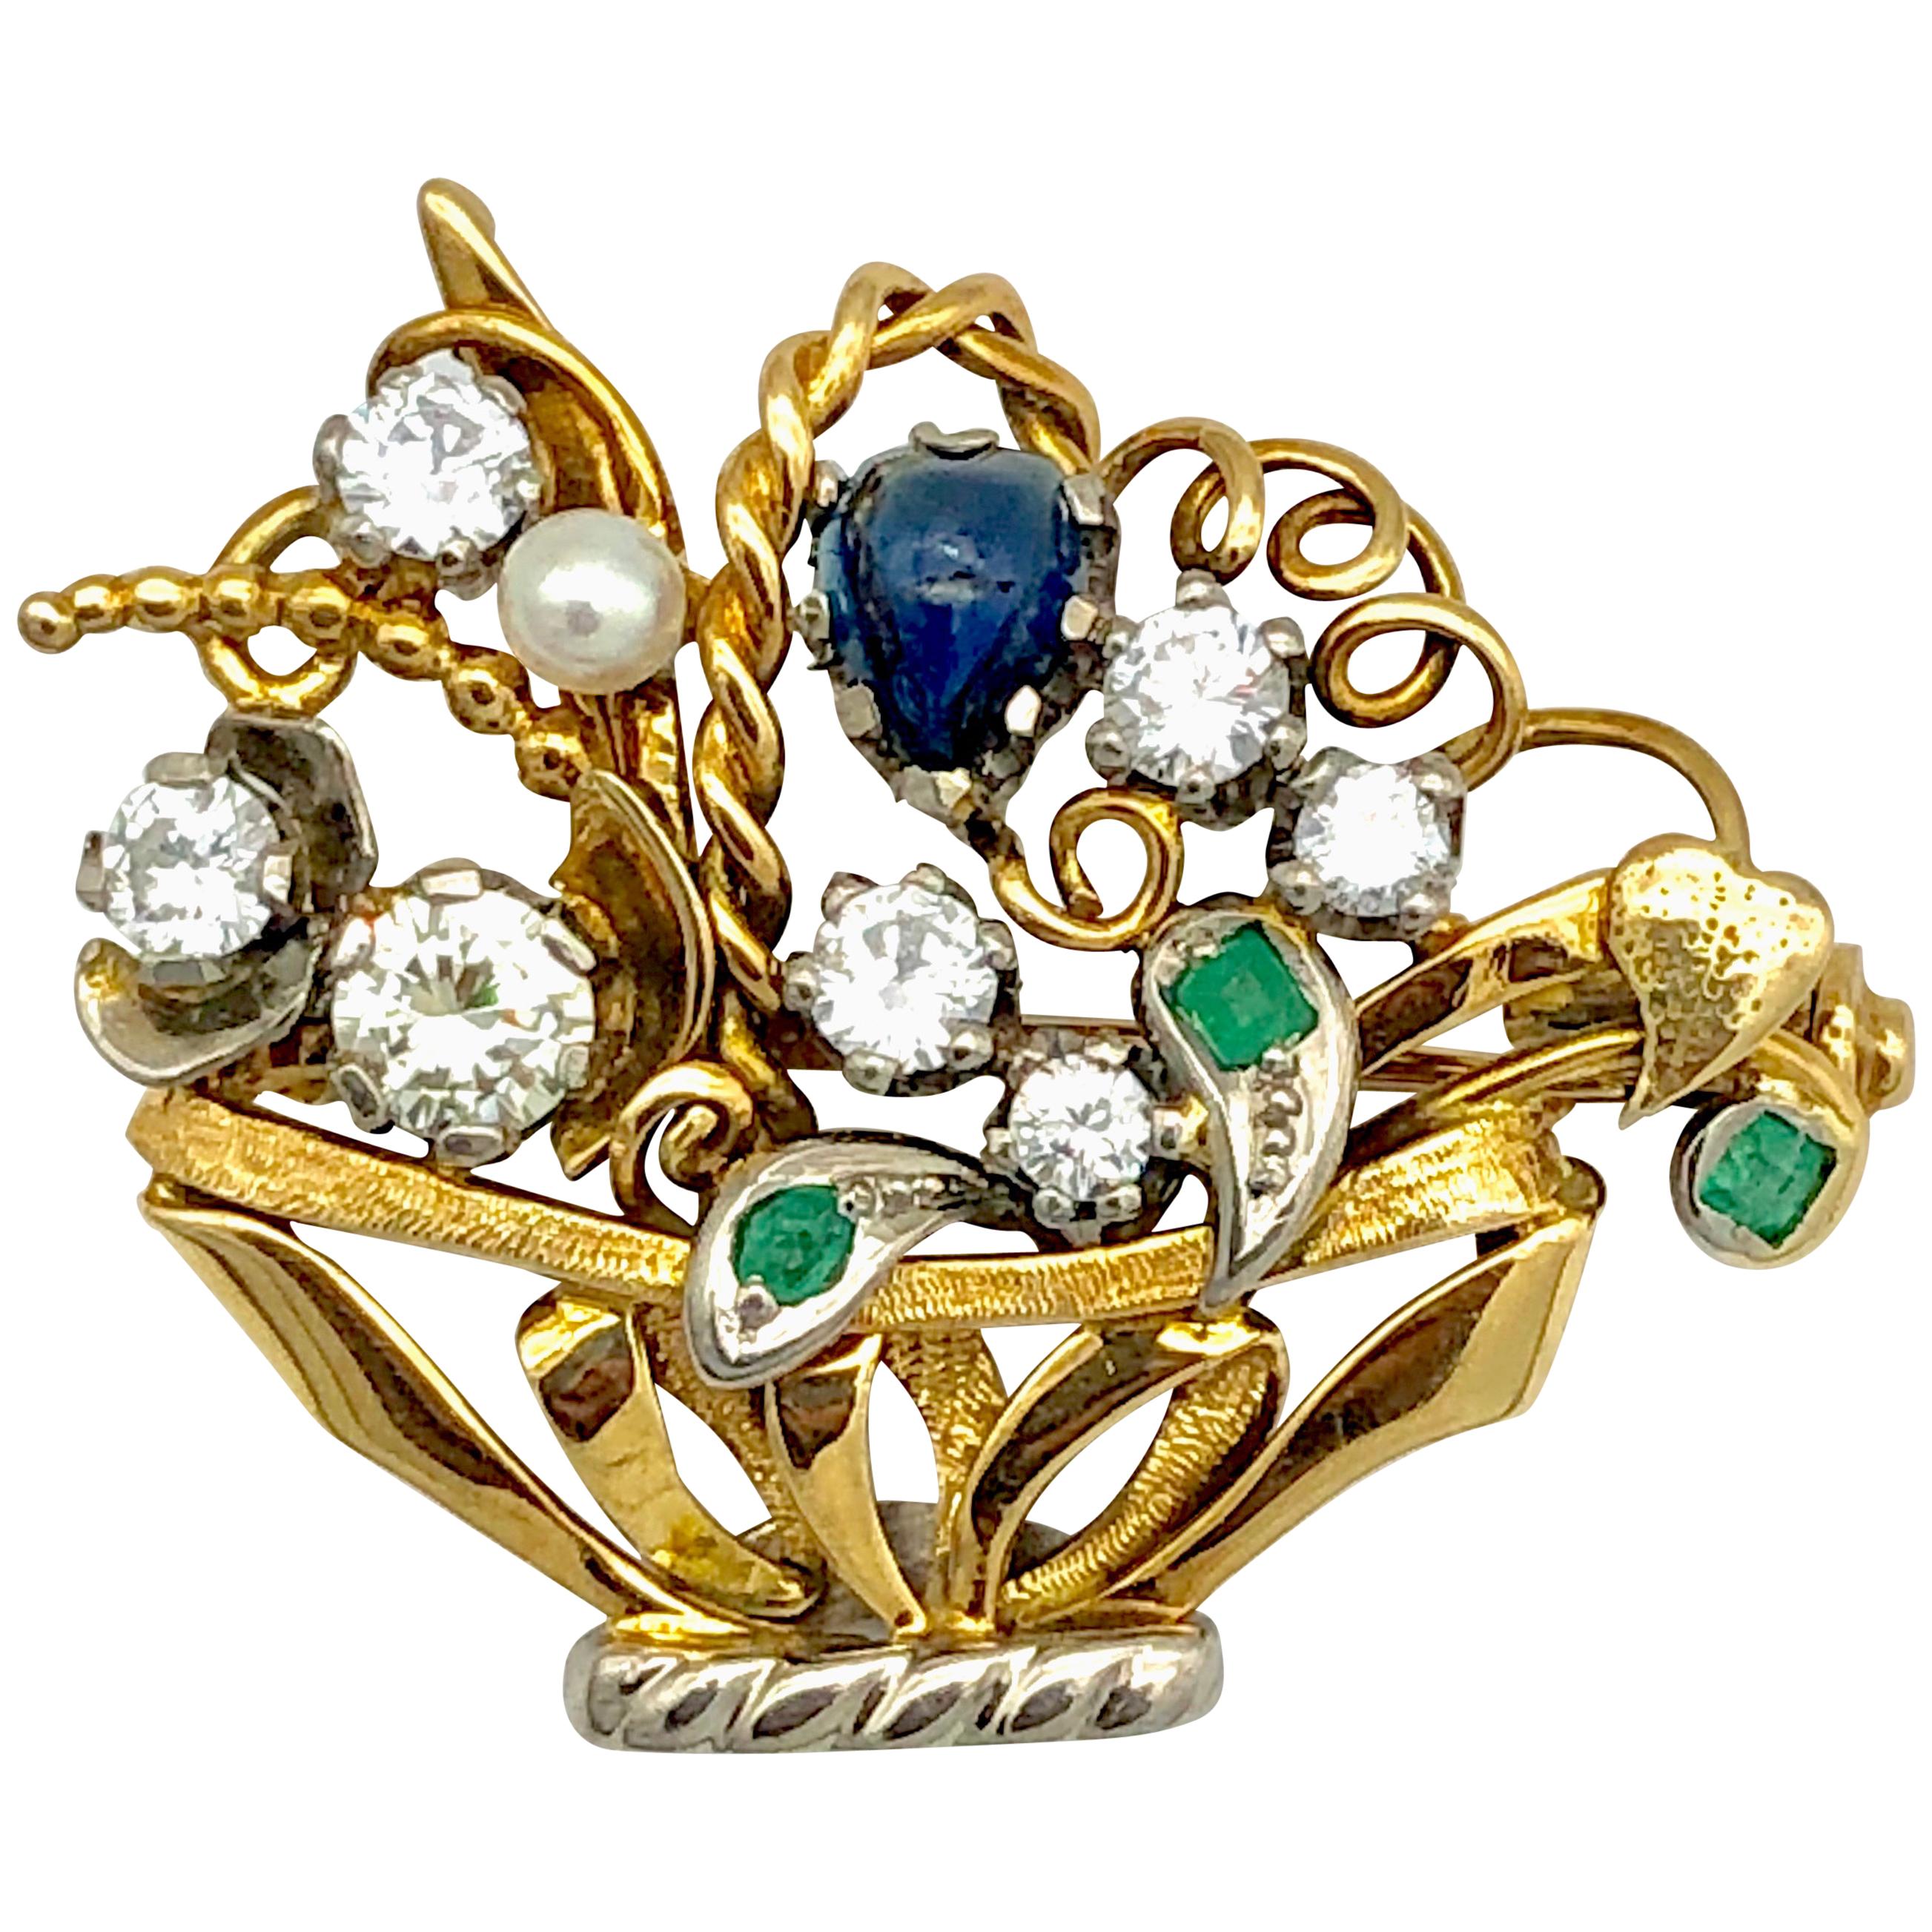 Pendentif broche panier de fleurs en or 14 carats avec diamants, saphirs, émeraudes et perles bicolores